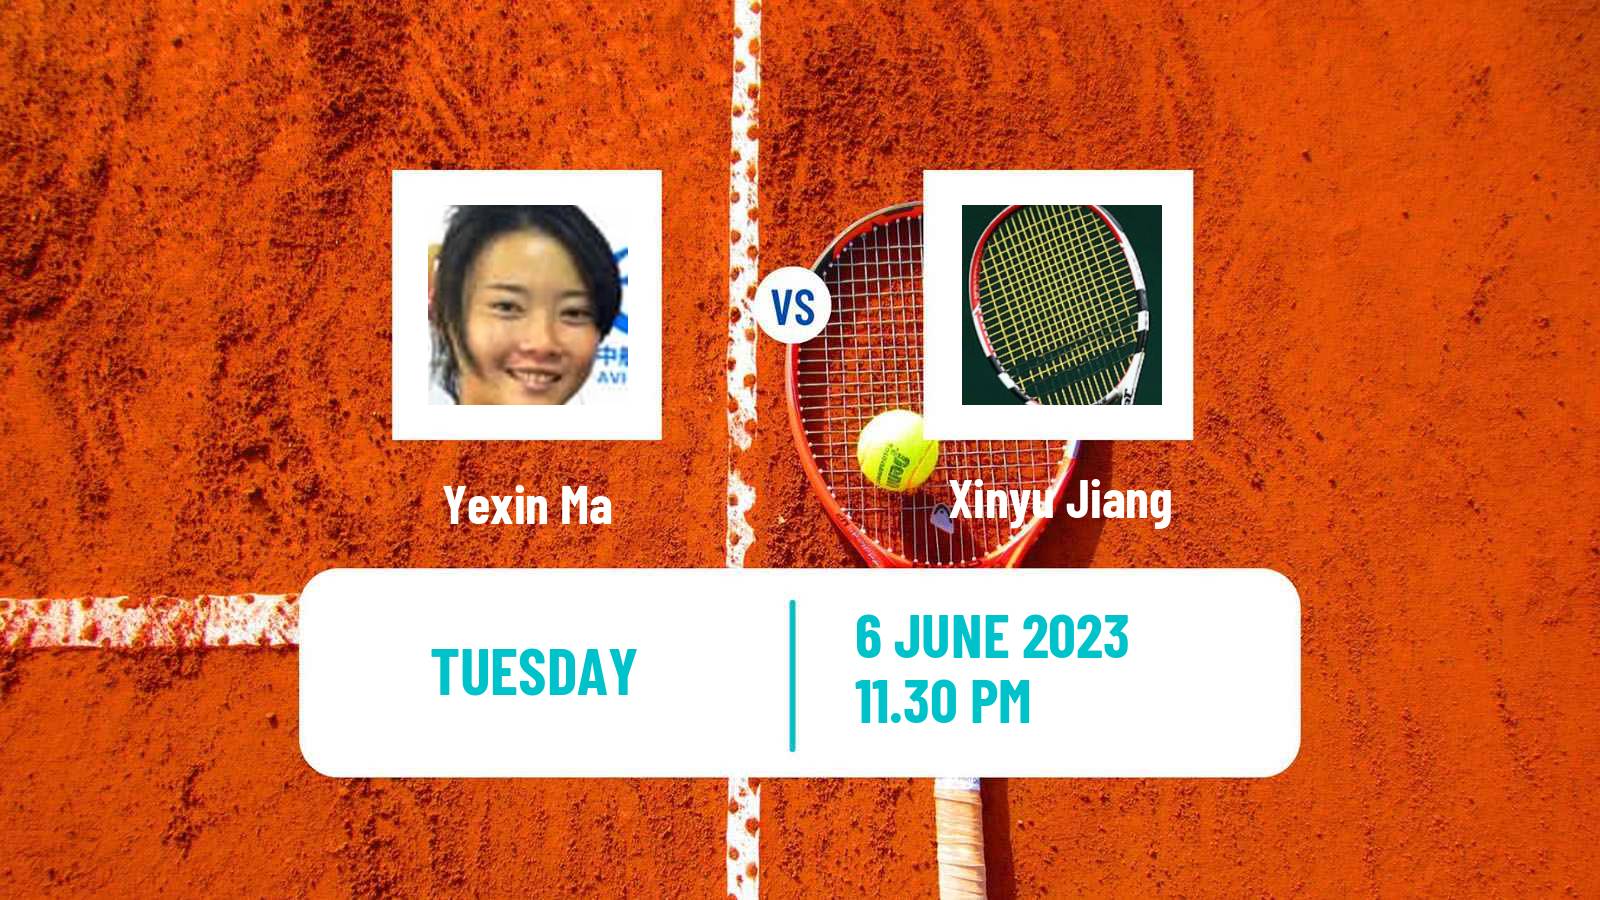 Tennis ITF W25 Luzhou Women Yexin Ma - Xinyu Jiang